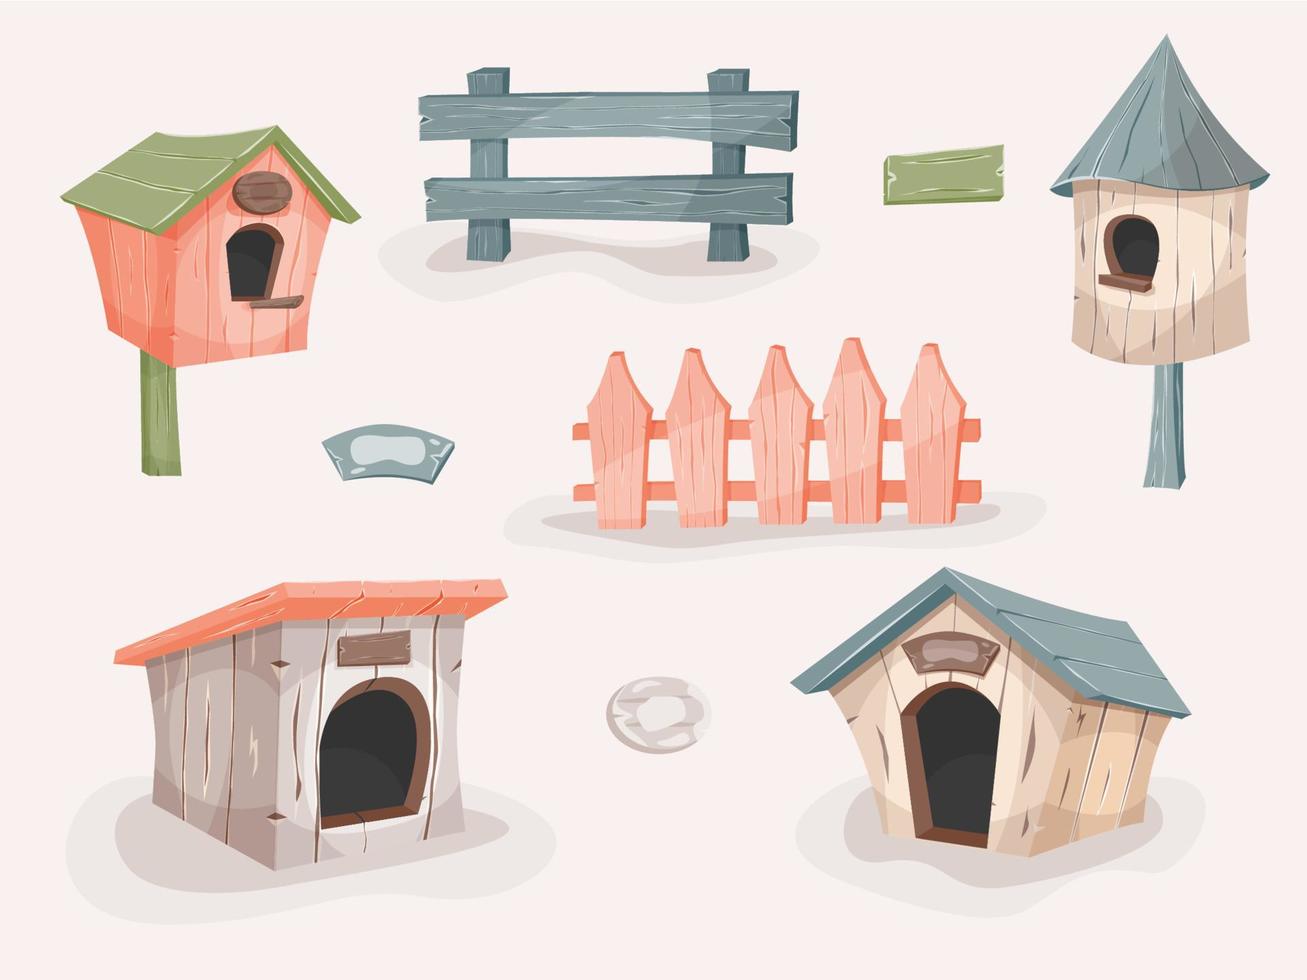 Barchiteset aus Hundehütten, Vogelhäuschen und Zäunen. bunte Holzhäuser im Cartoon-Stil, Feeder. architecture.cture vektor